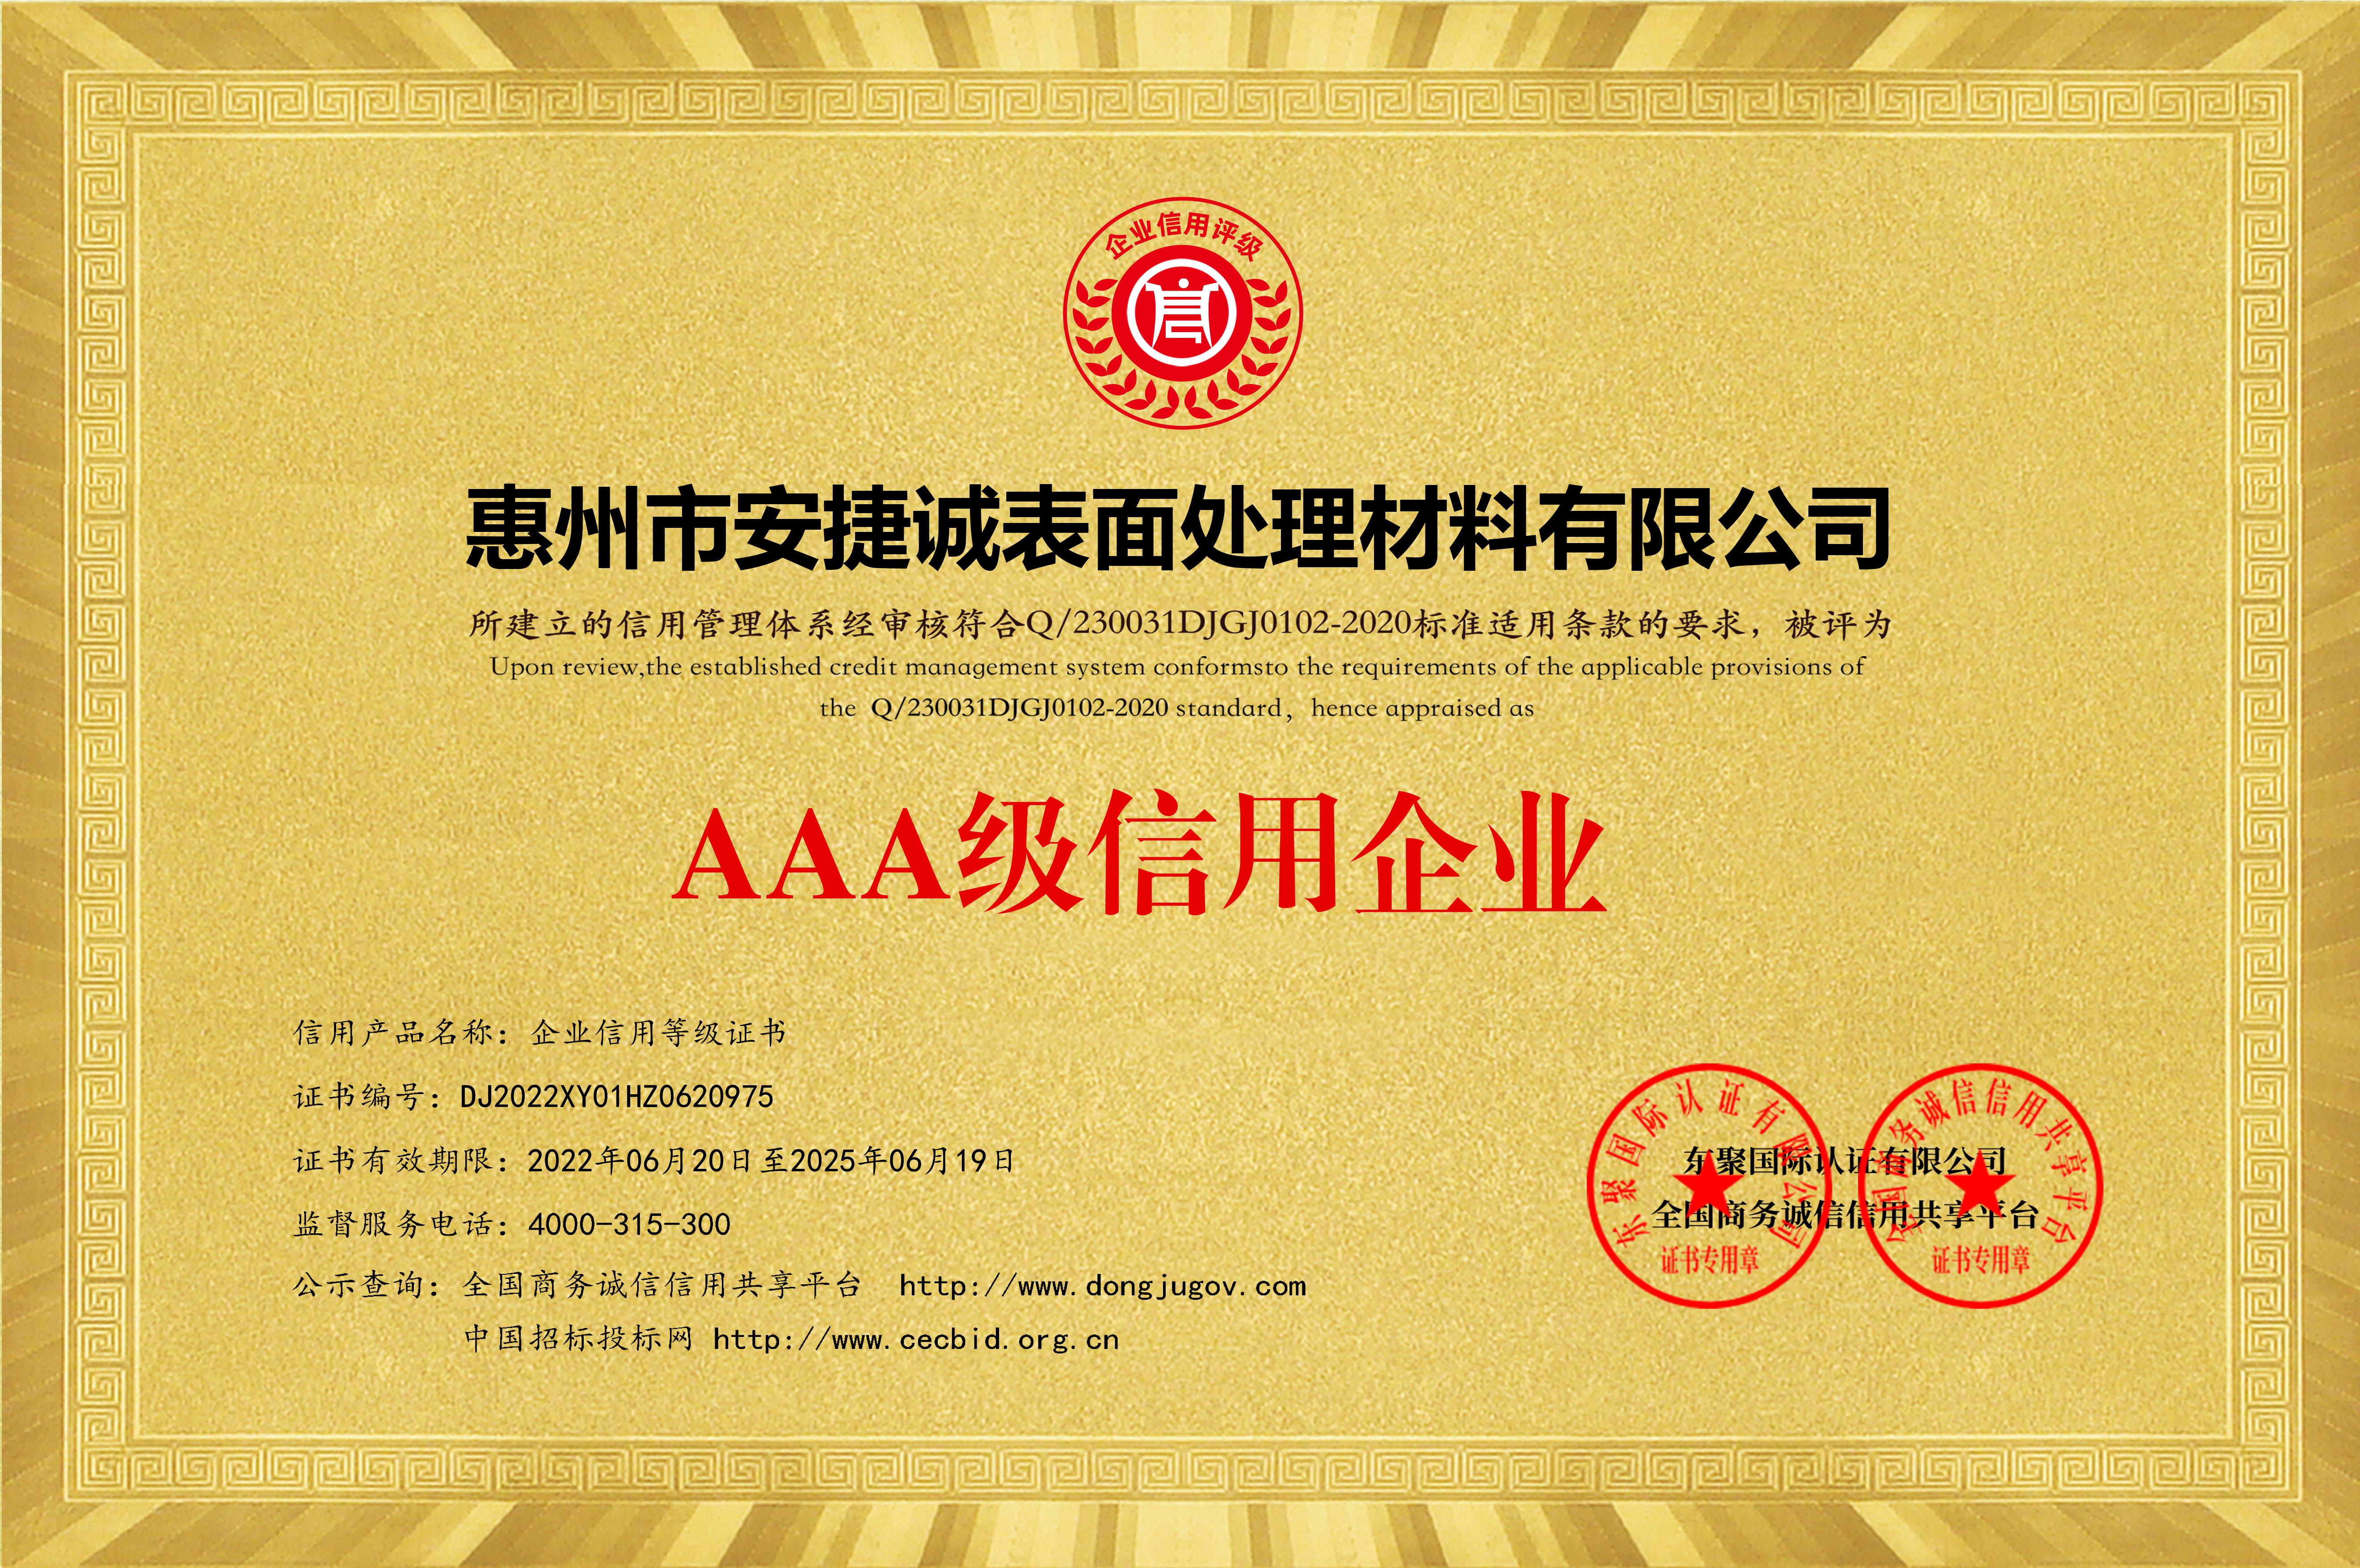 AAA级信用企业等级证书黄色铜牌